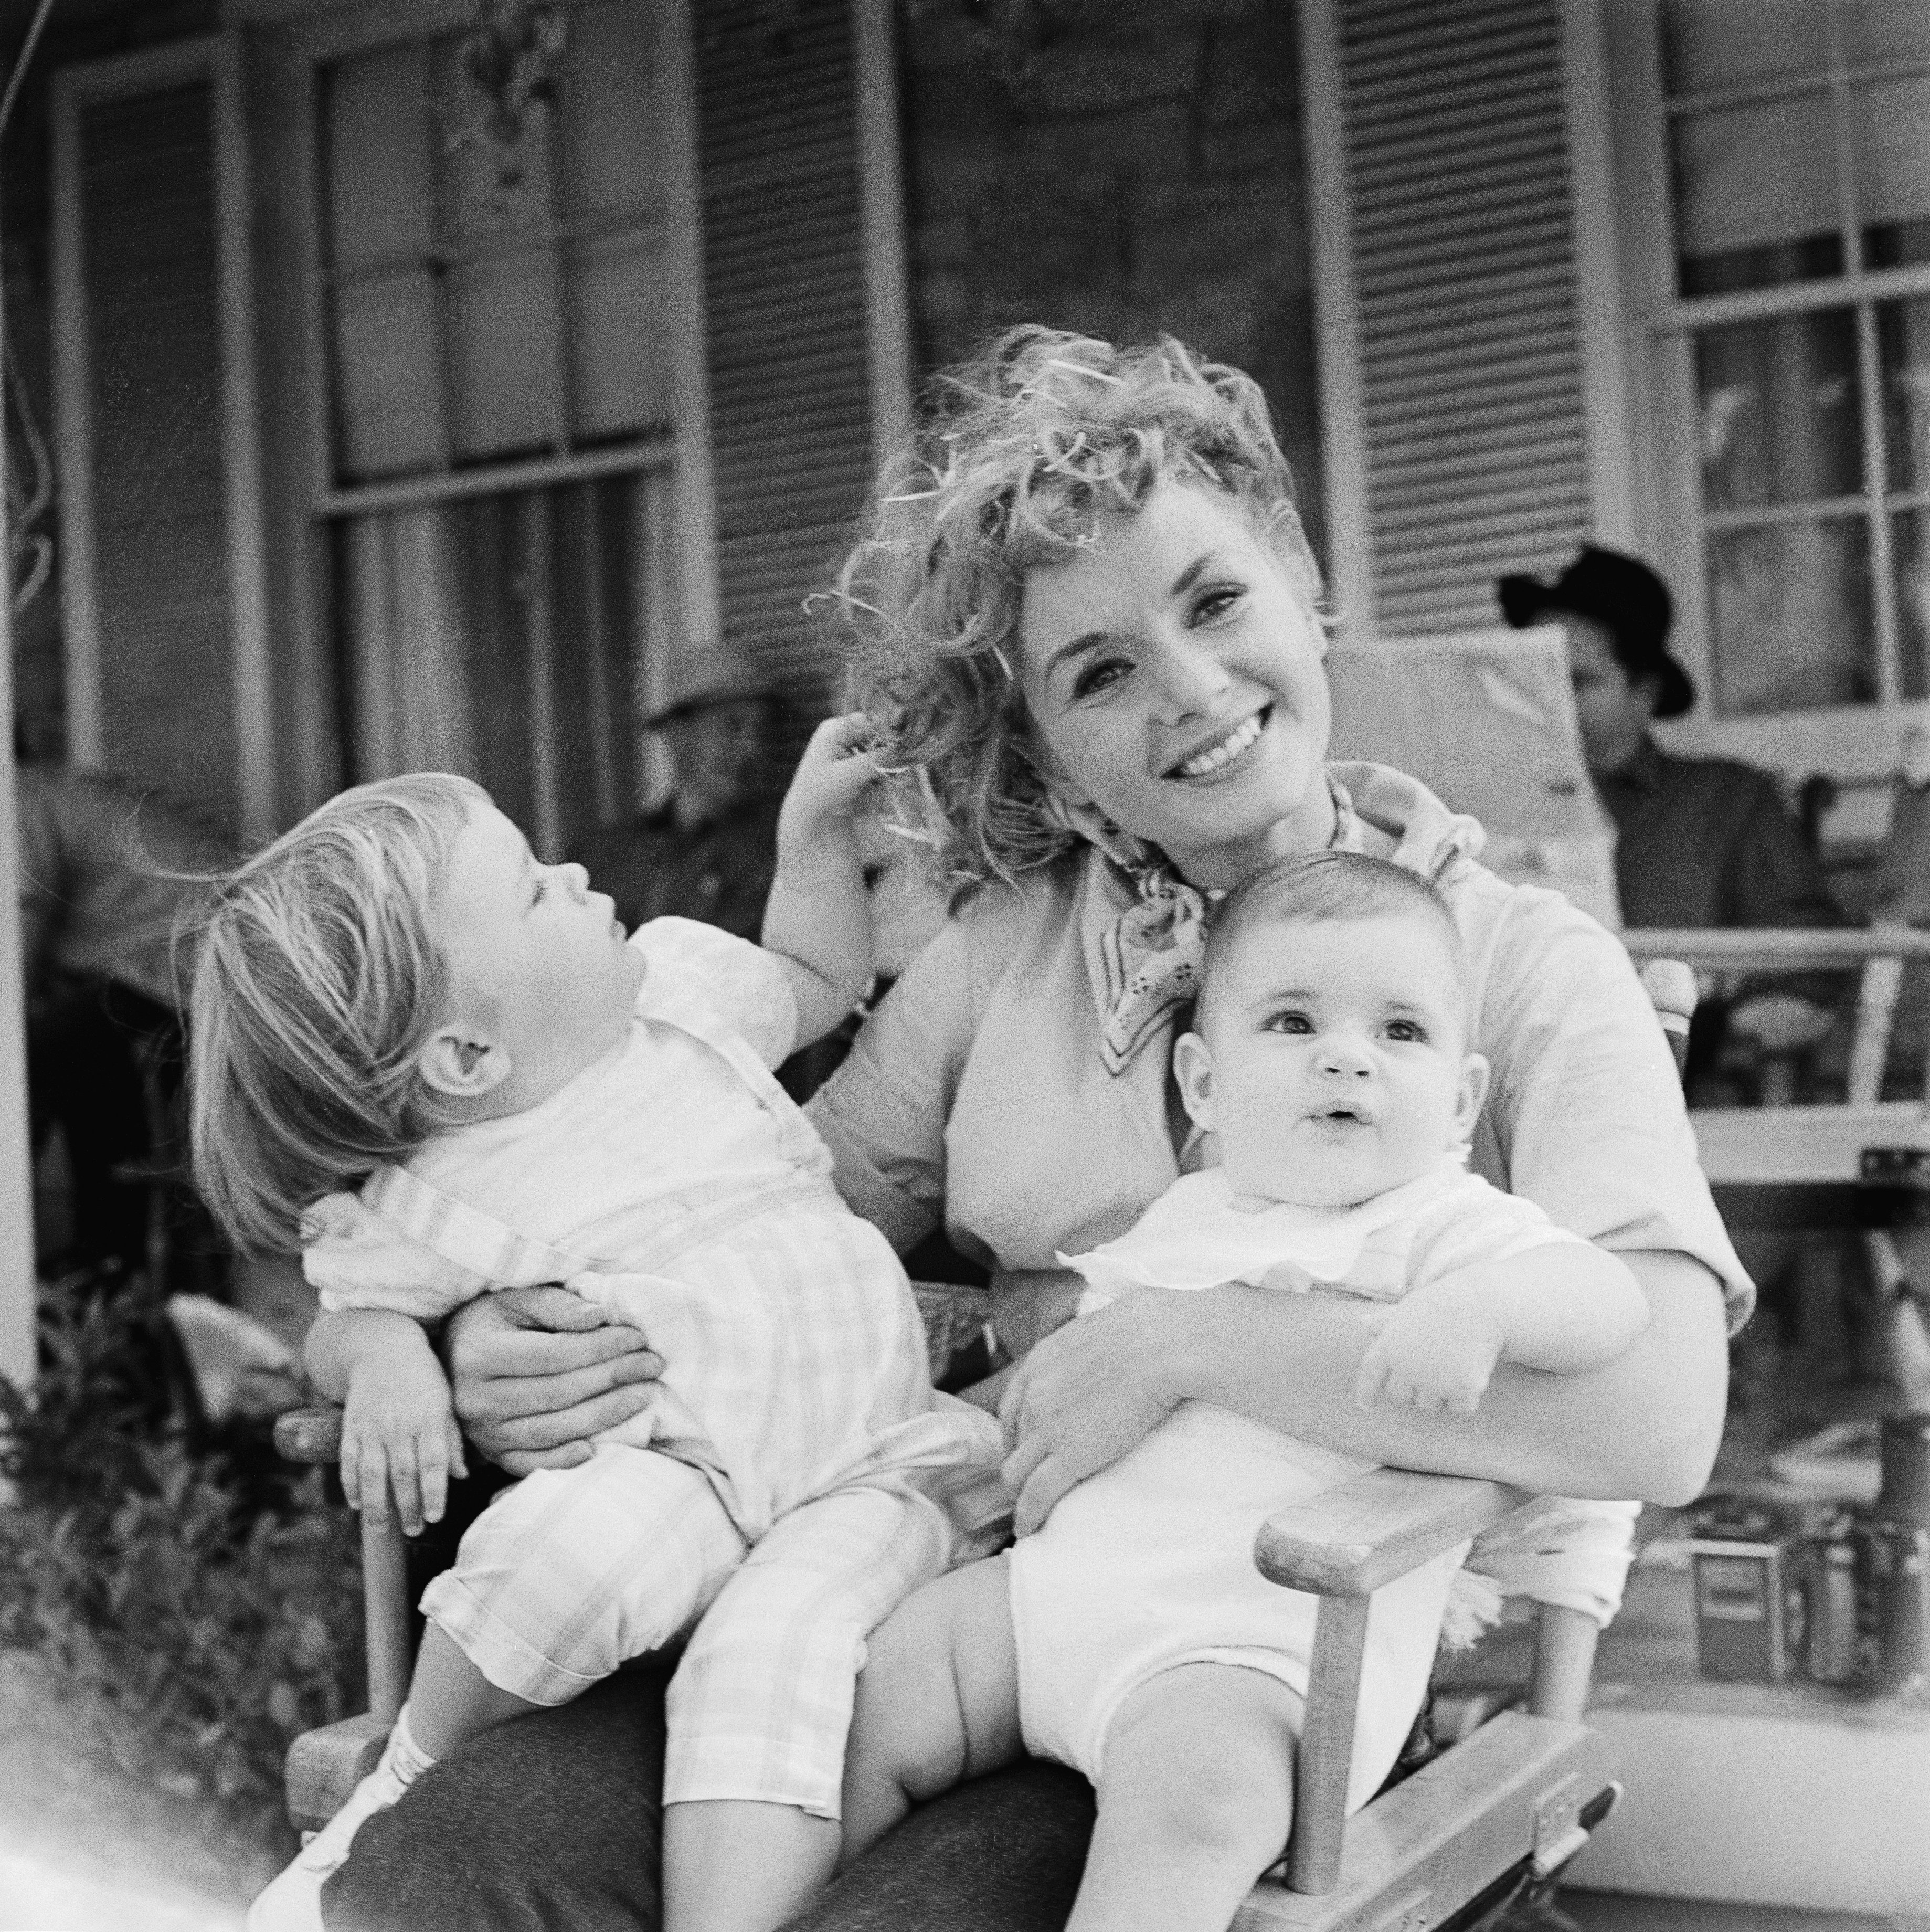 Debbie Reynolds holding her children on October 30, 1958 | Source: Getty Images